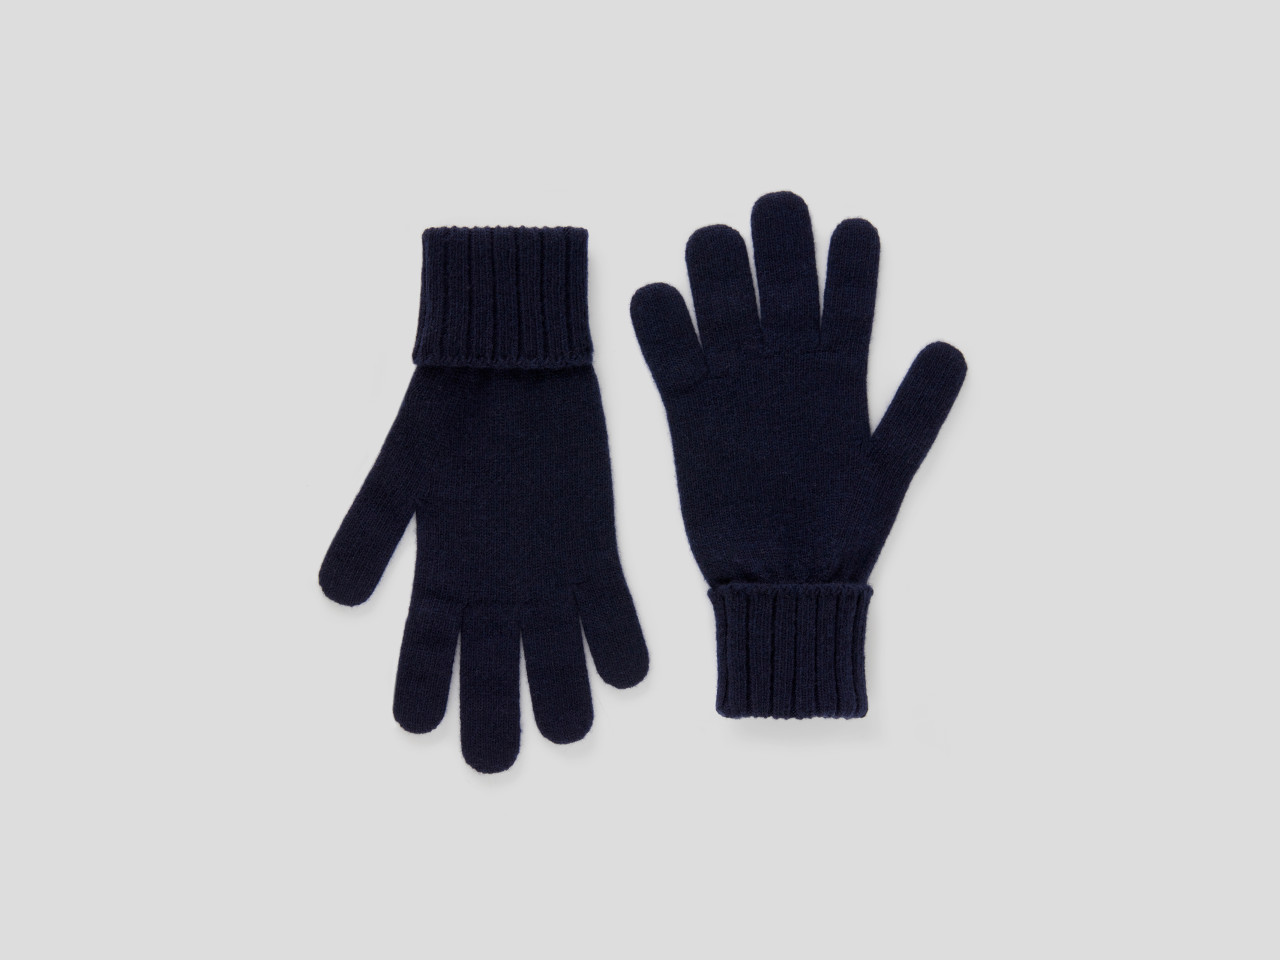 Accessoires Handschuhe Strickhandschuhe Handschuhe schwarz Benetton neu mit Etikett 